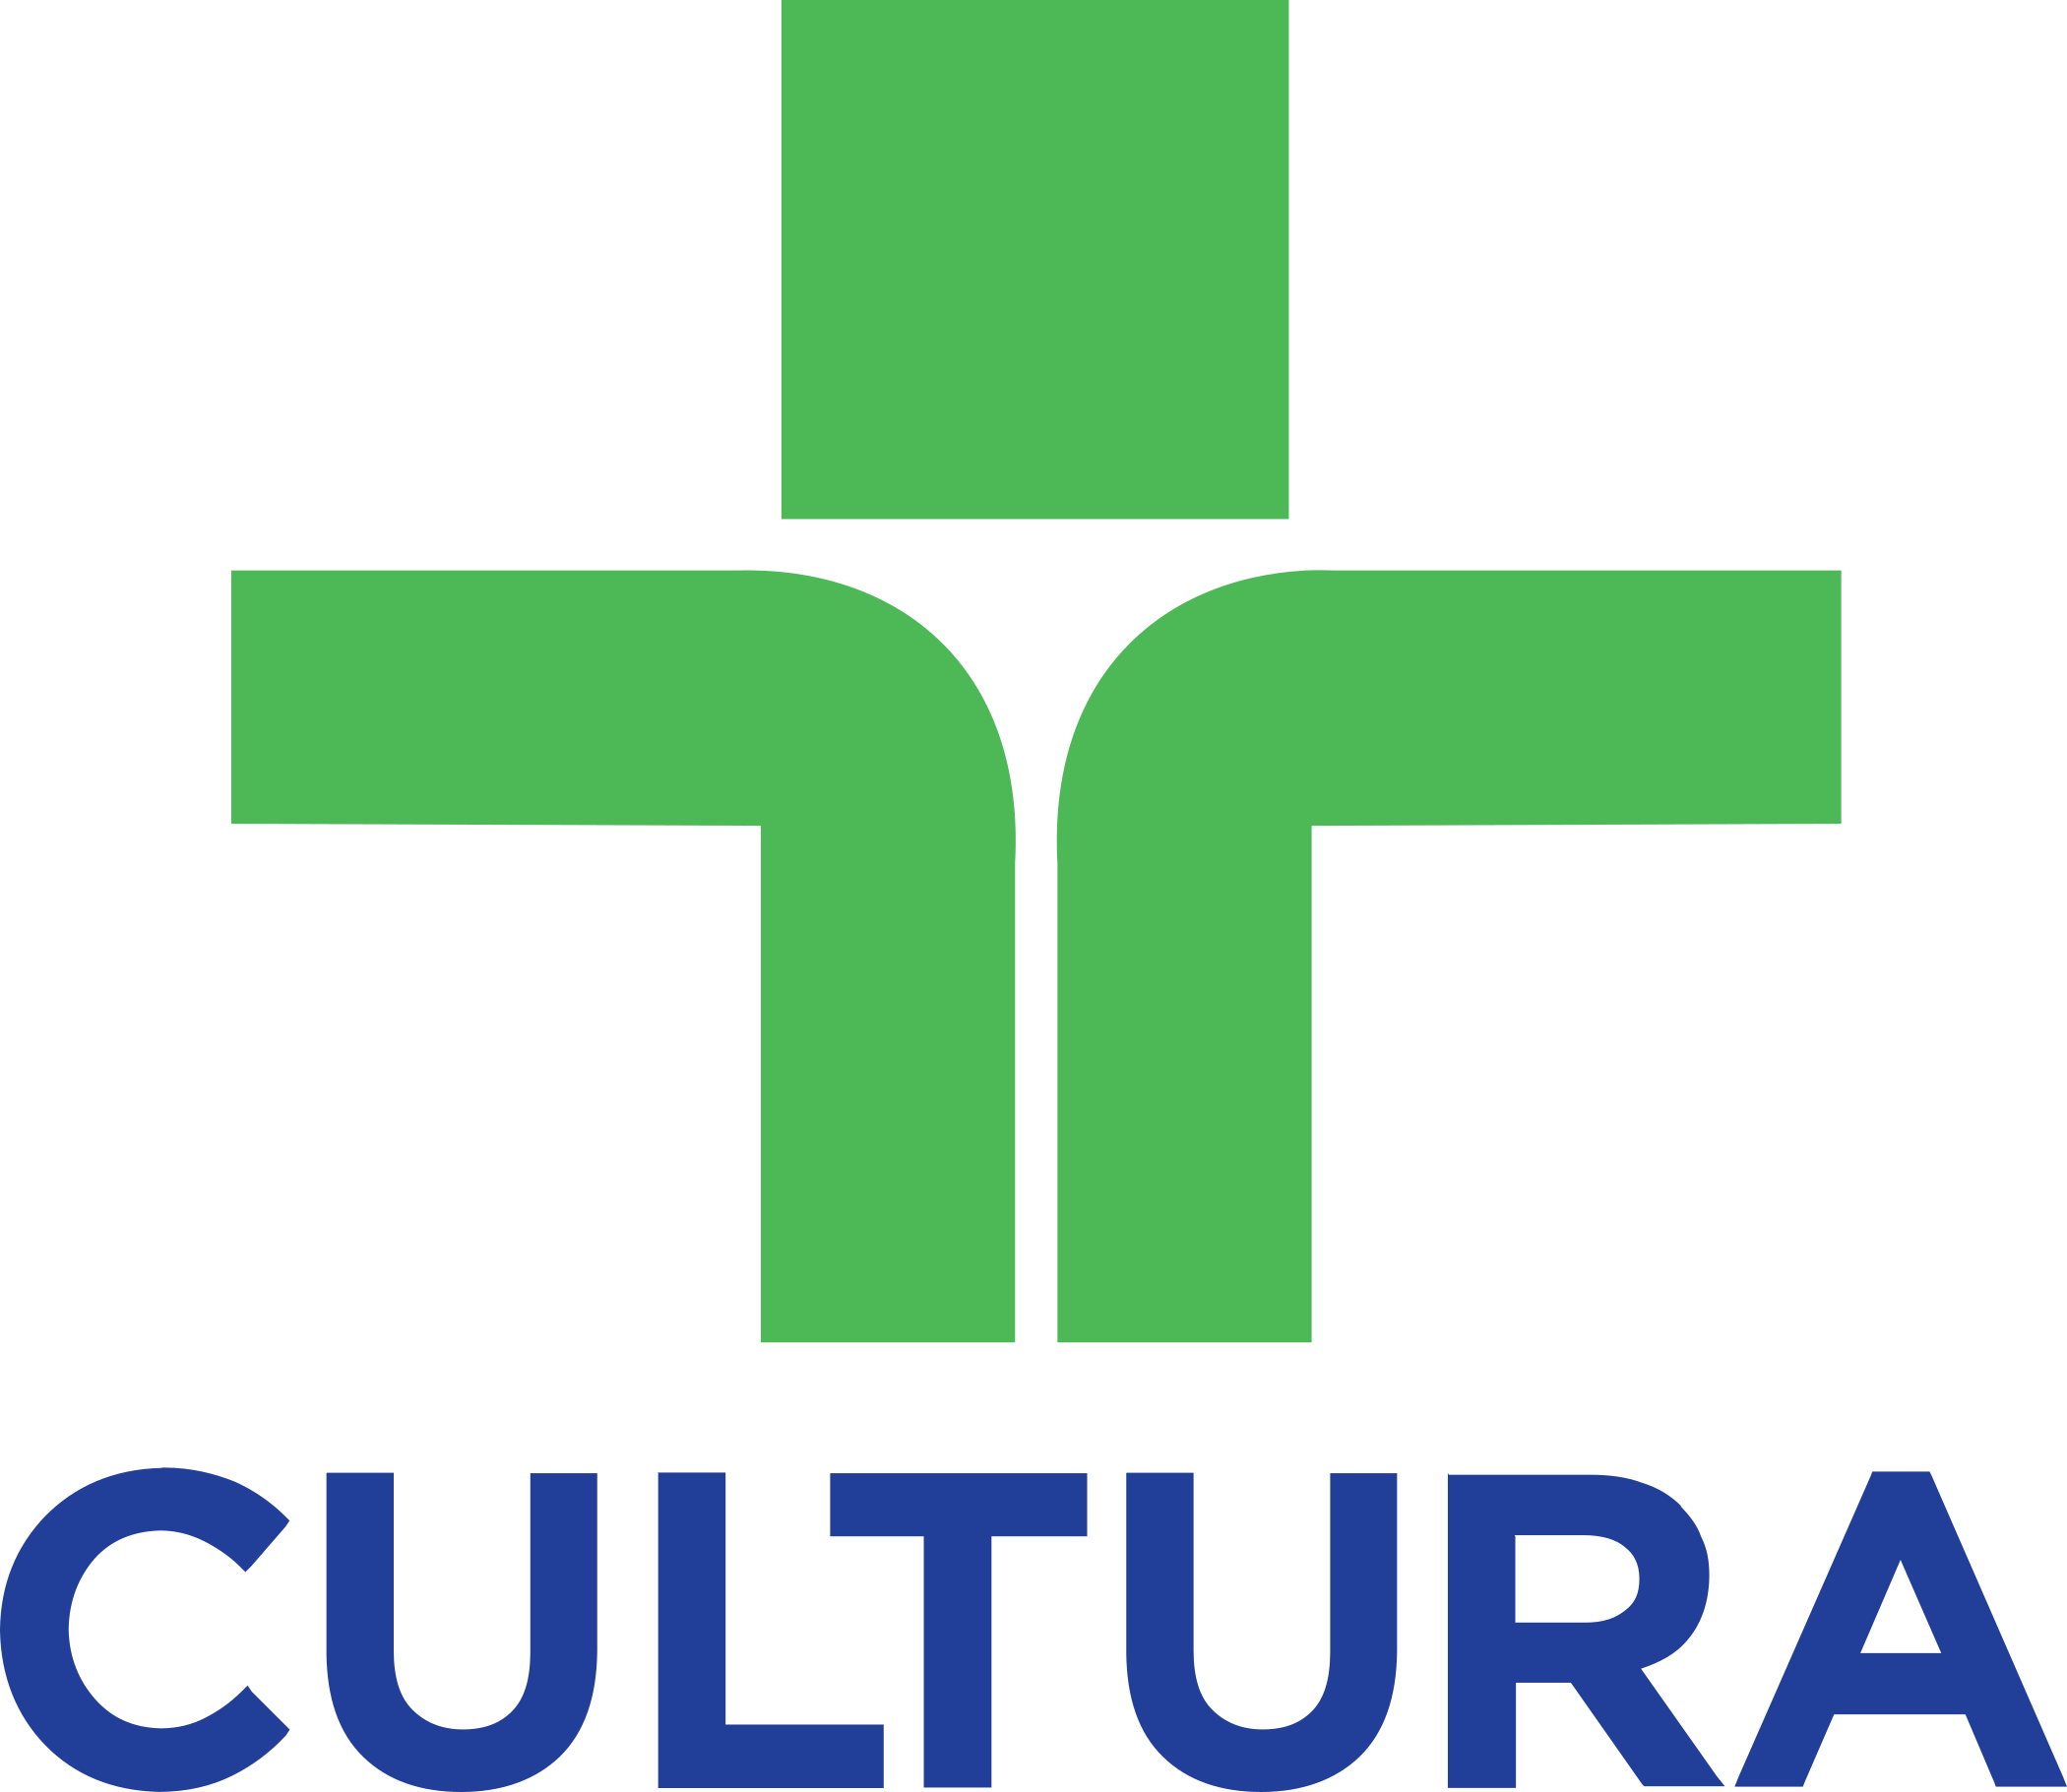 TV Cultura Logo - PNG e Vetor - Download de Logo